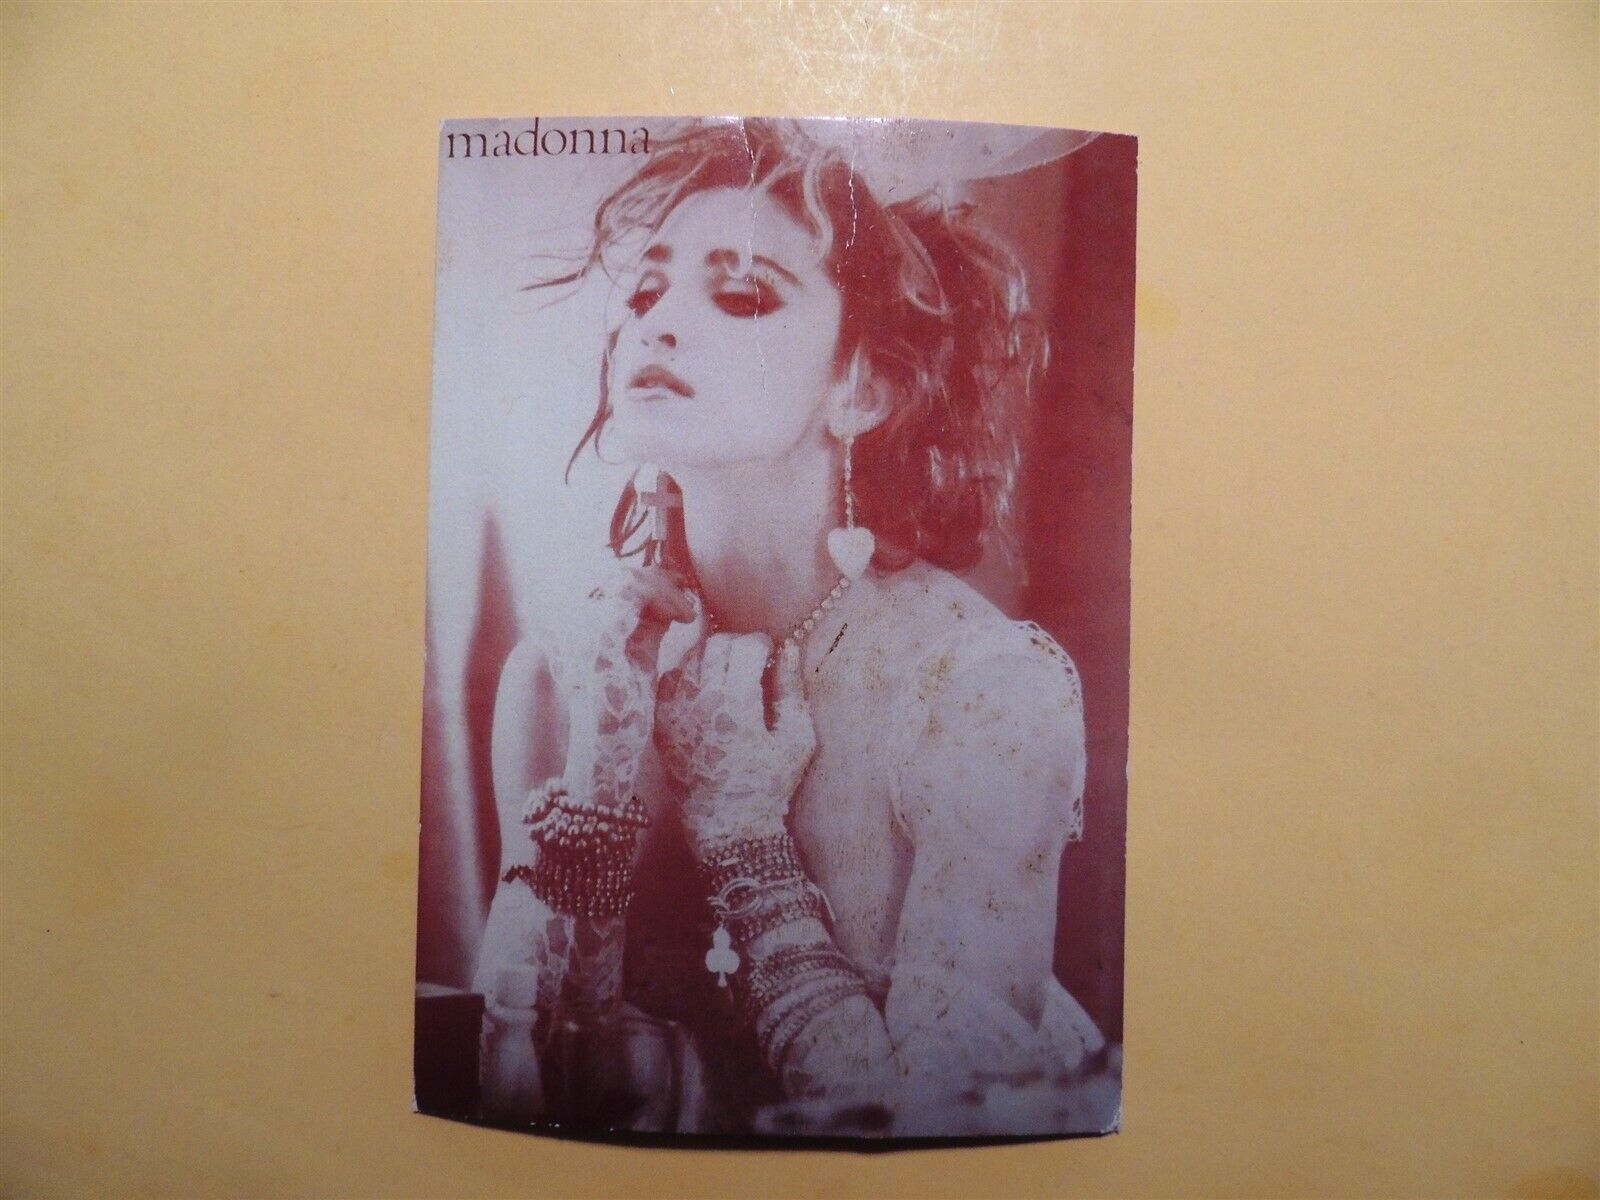 Madonna celebrity singer artist vintage postcard 